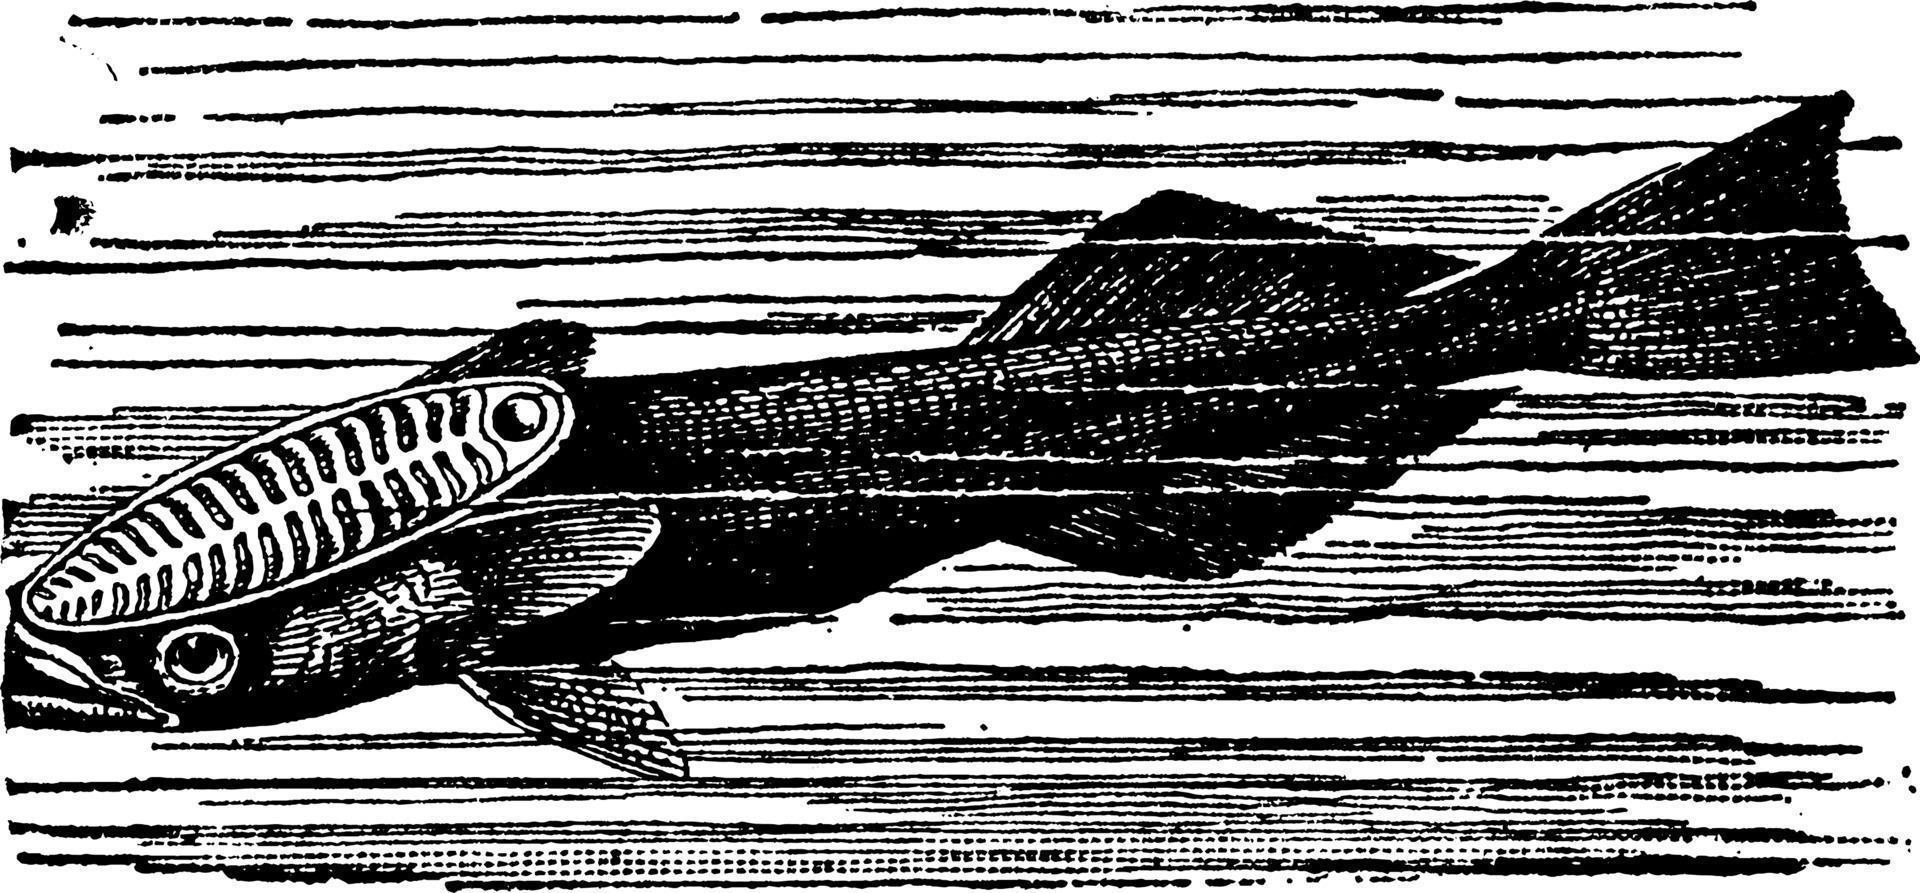 remora ou peixe sugador ou peixe otário ou echeneidae, ilustração vintage. vetor